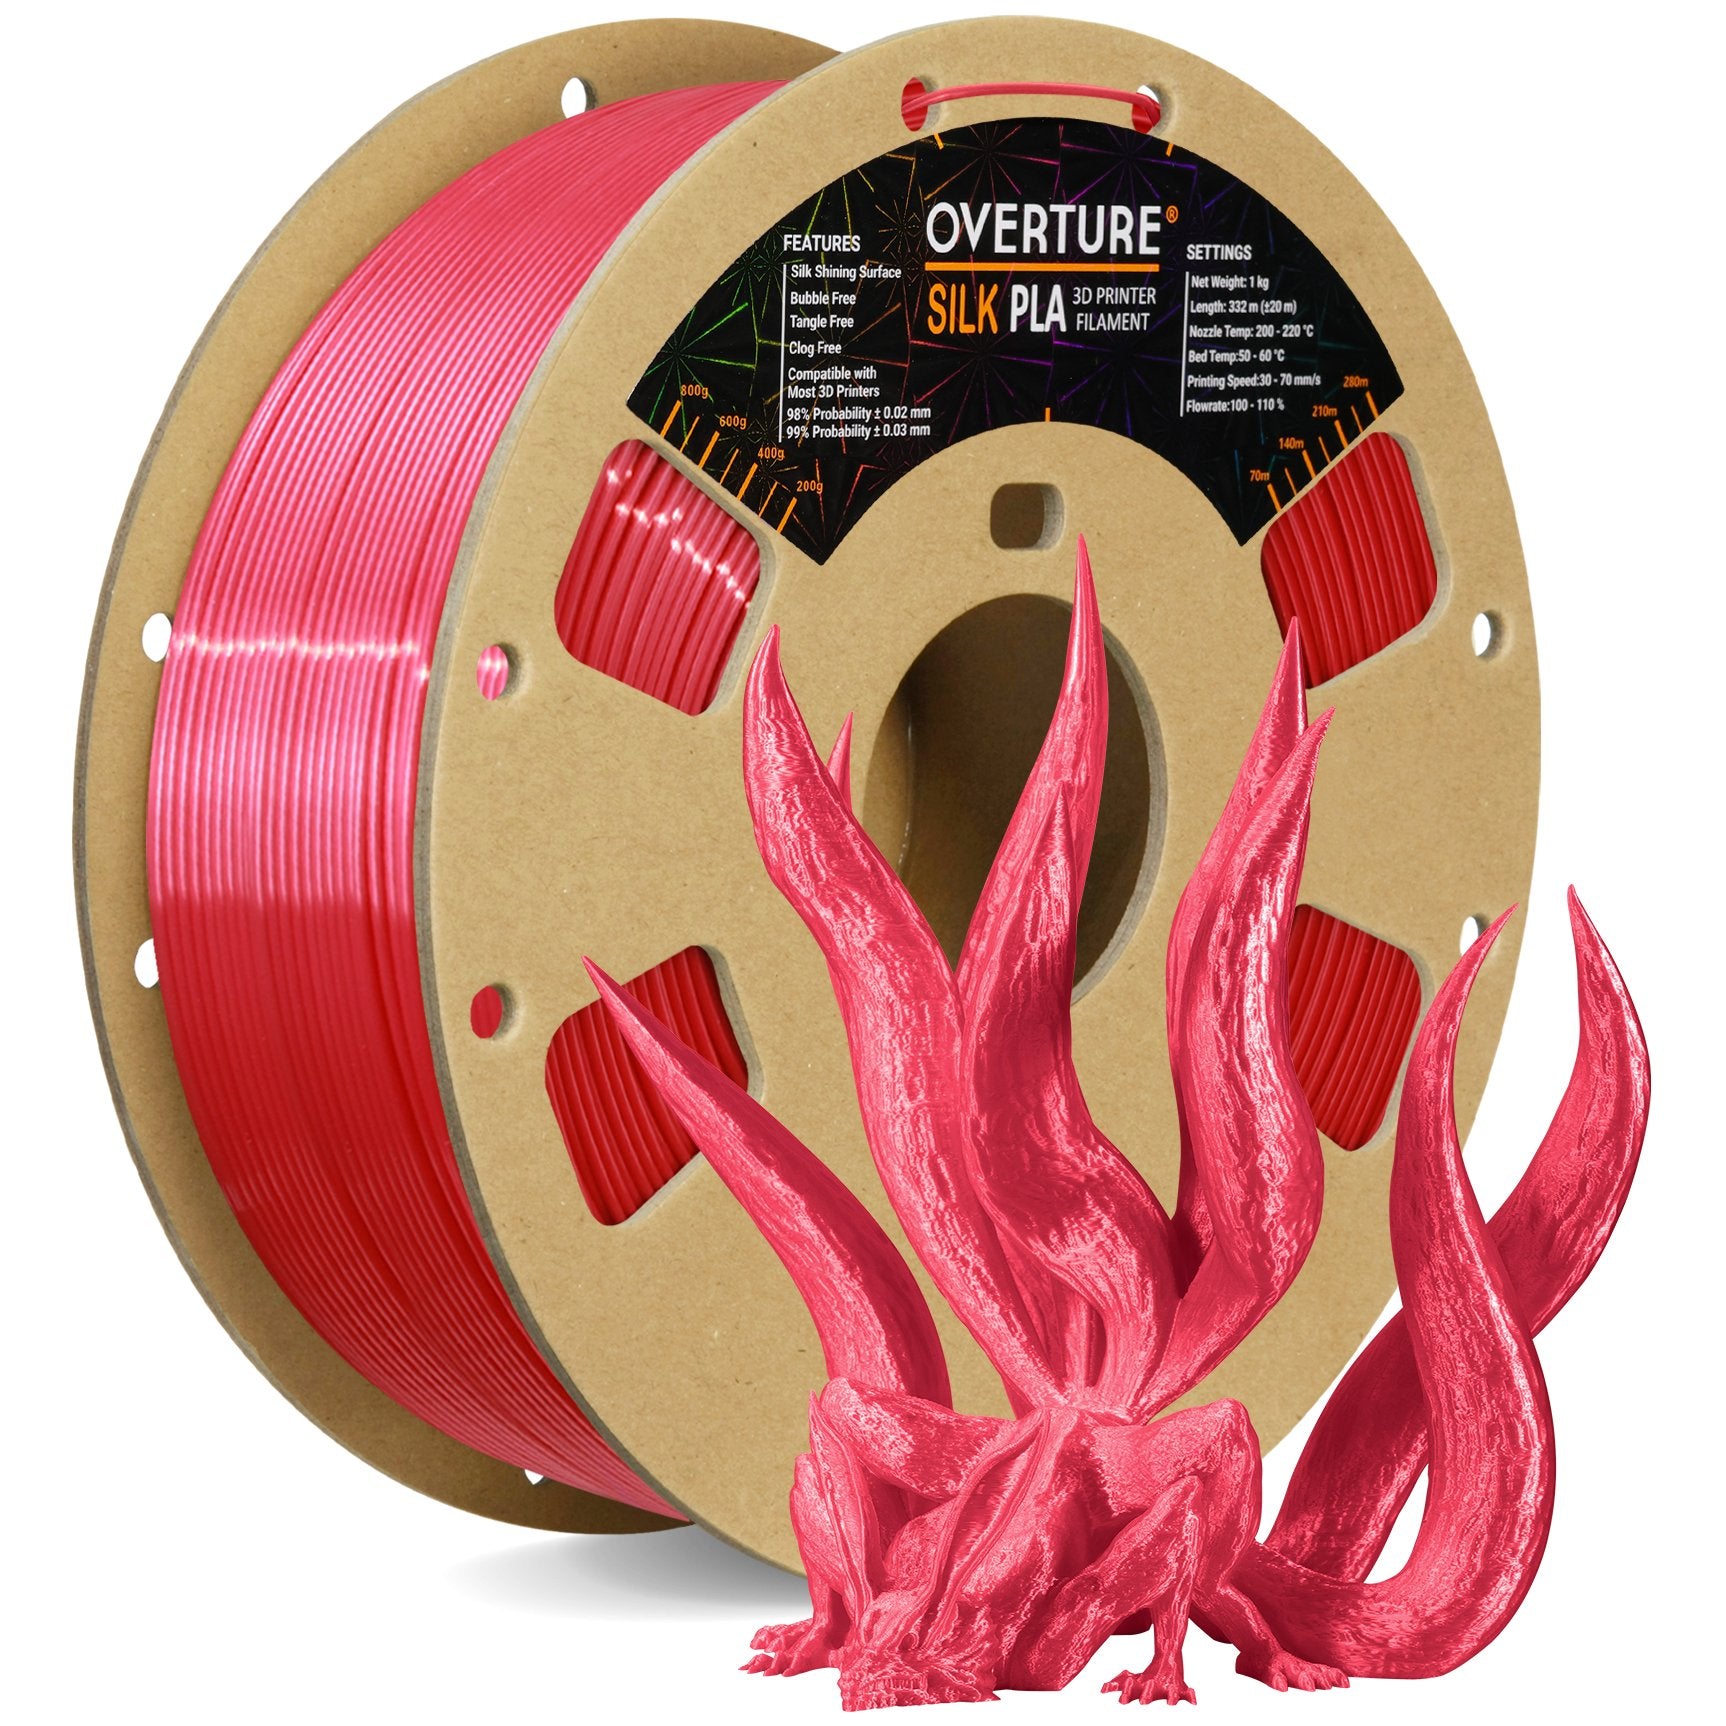 Winkle Filament PLA | Pla 1,75 mm | Filament Impression | Imprimante 3D |  Filament 3D | Couleur Blanc Glacier | Bobine 300gr